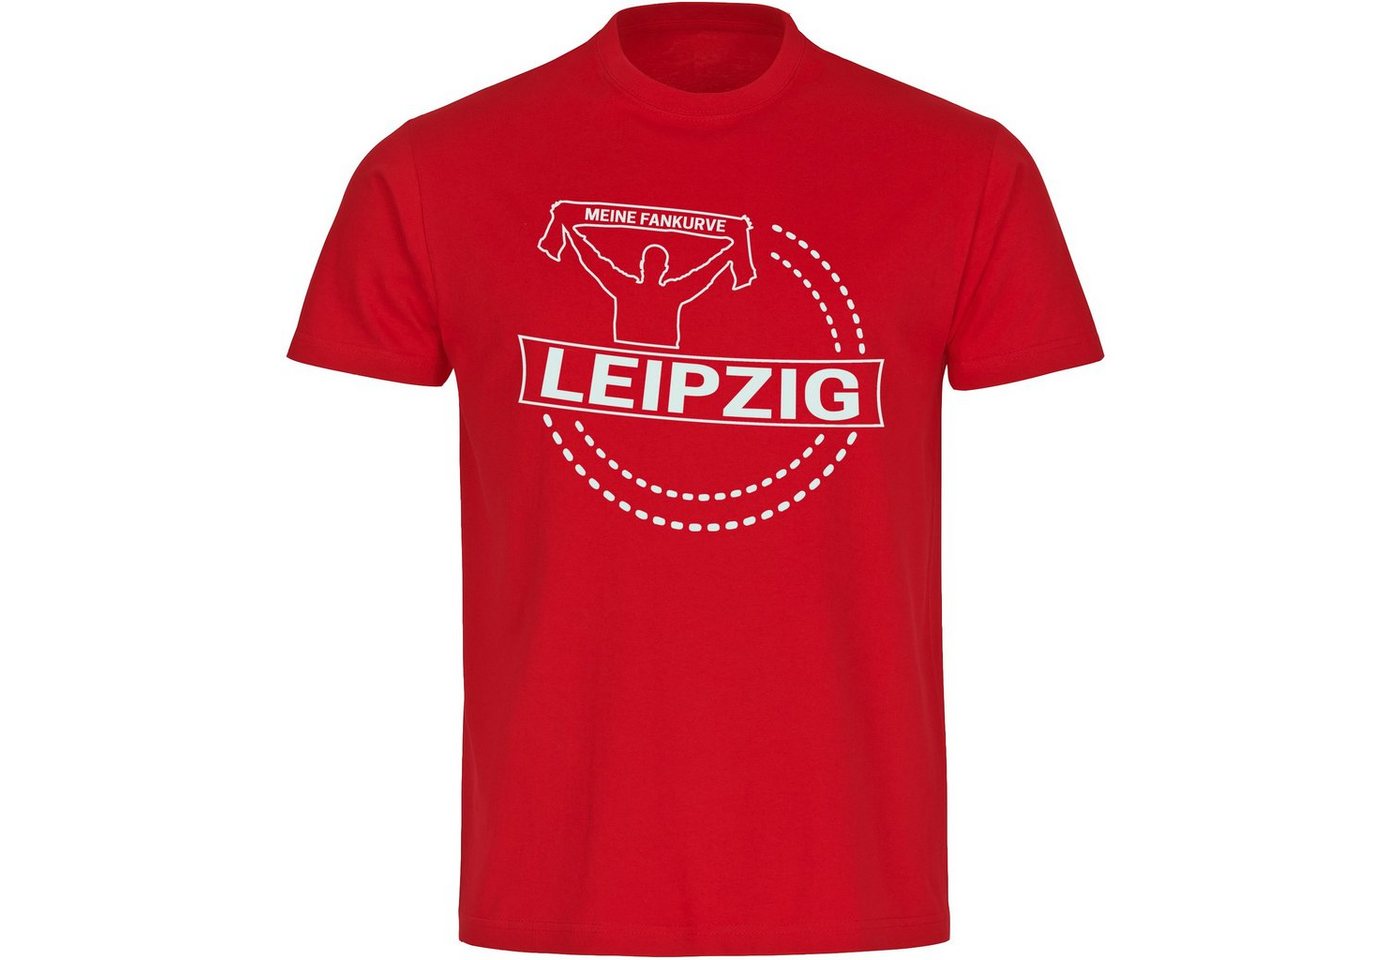 multifanshop T-Shirt Herren Leipzig - Meine Fankurve - Männer von multifanshop